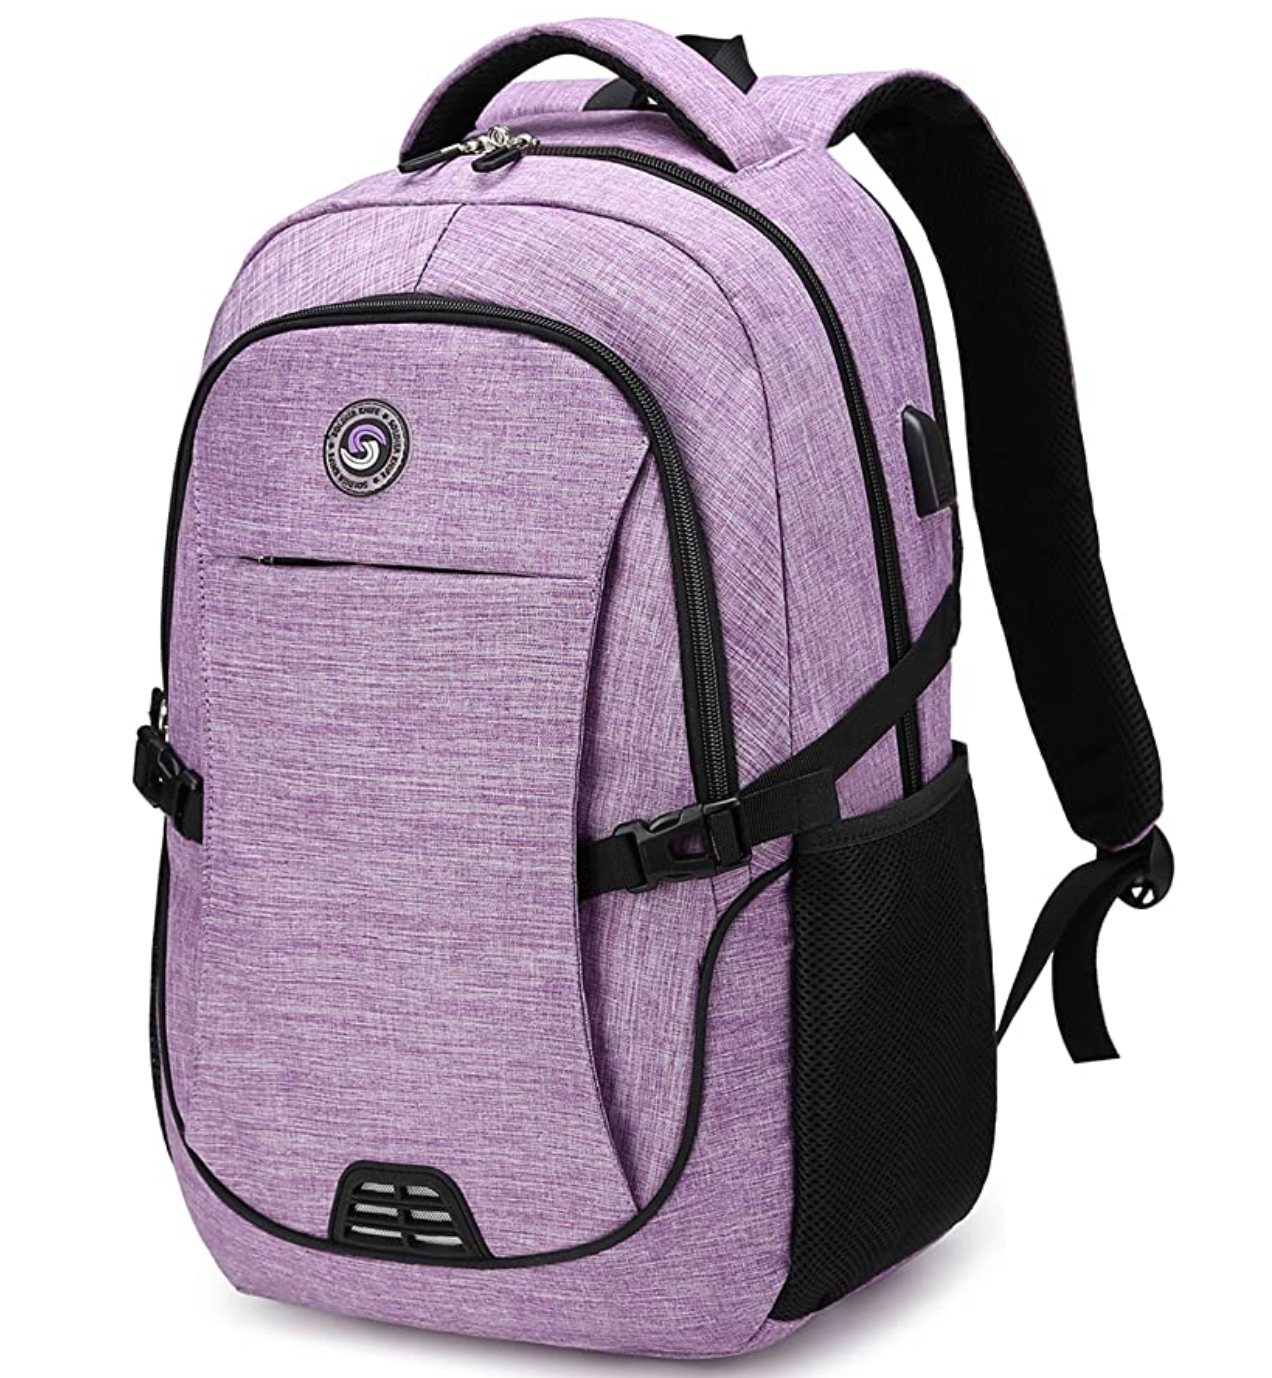 SHRRADOO Waterproof College Laptop Backpack